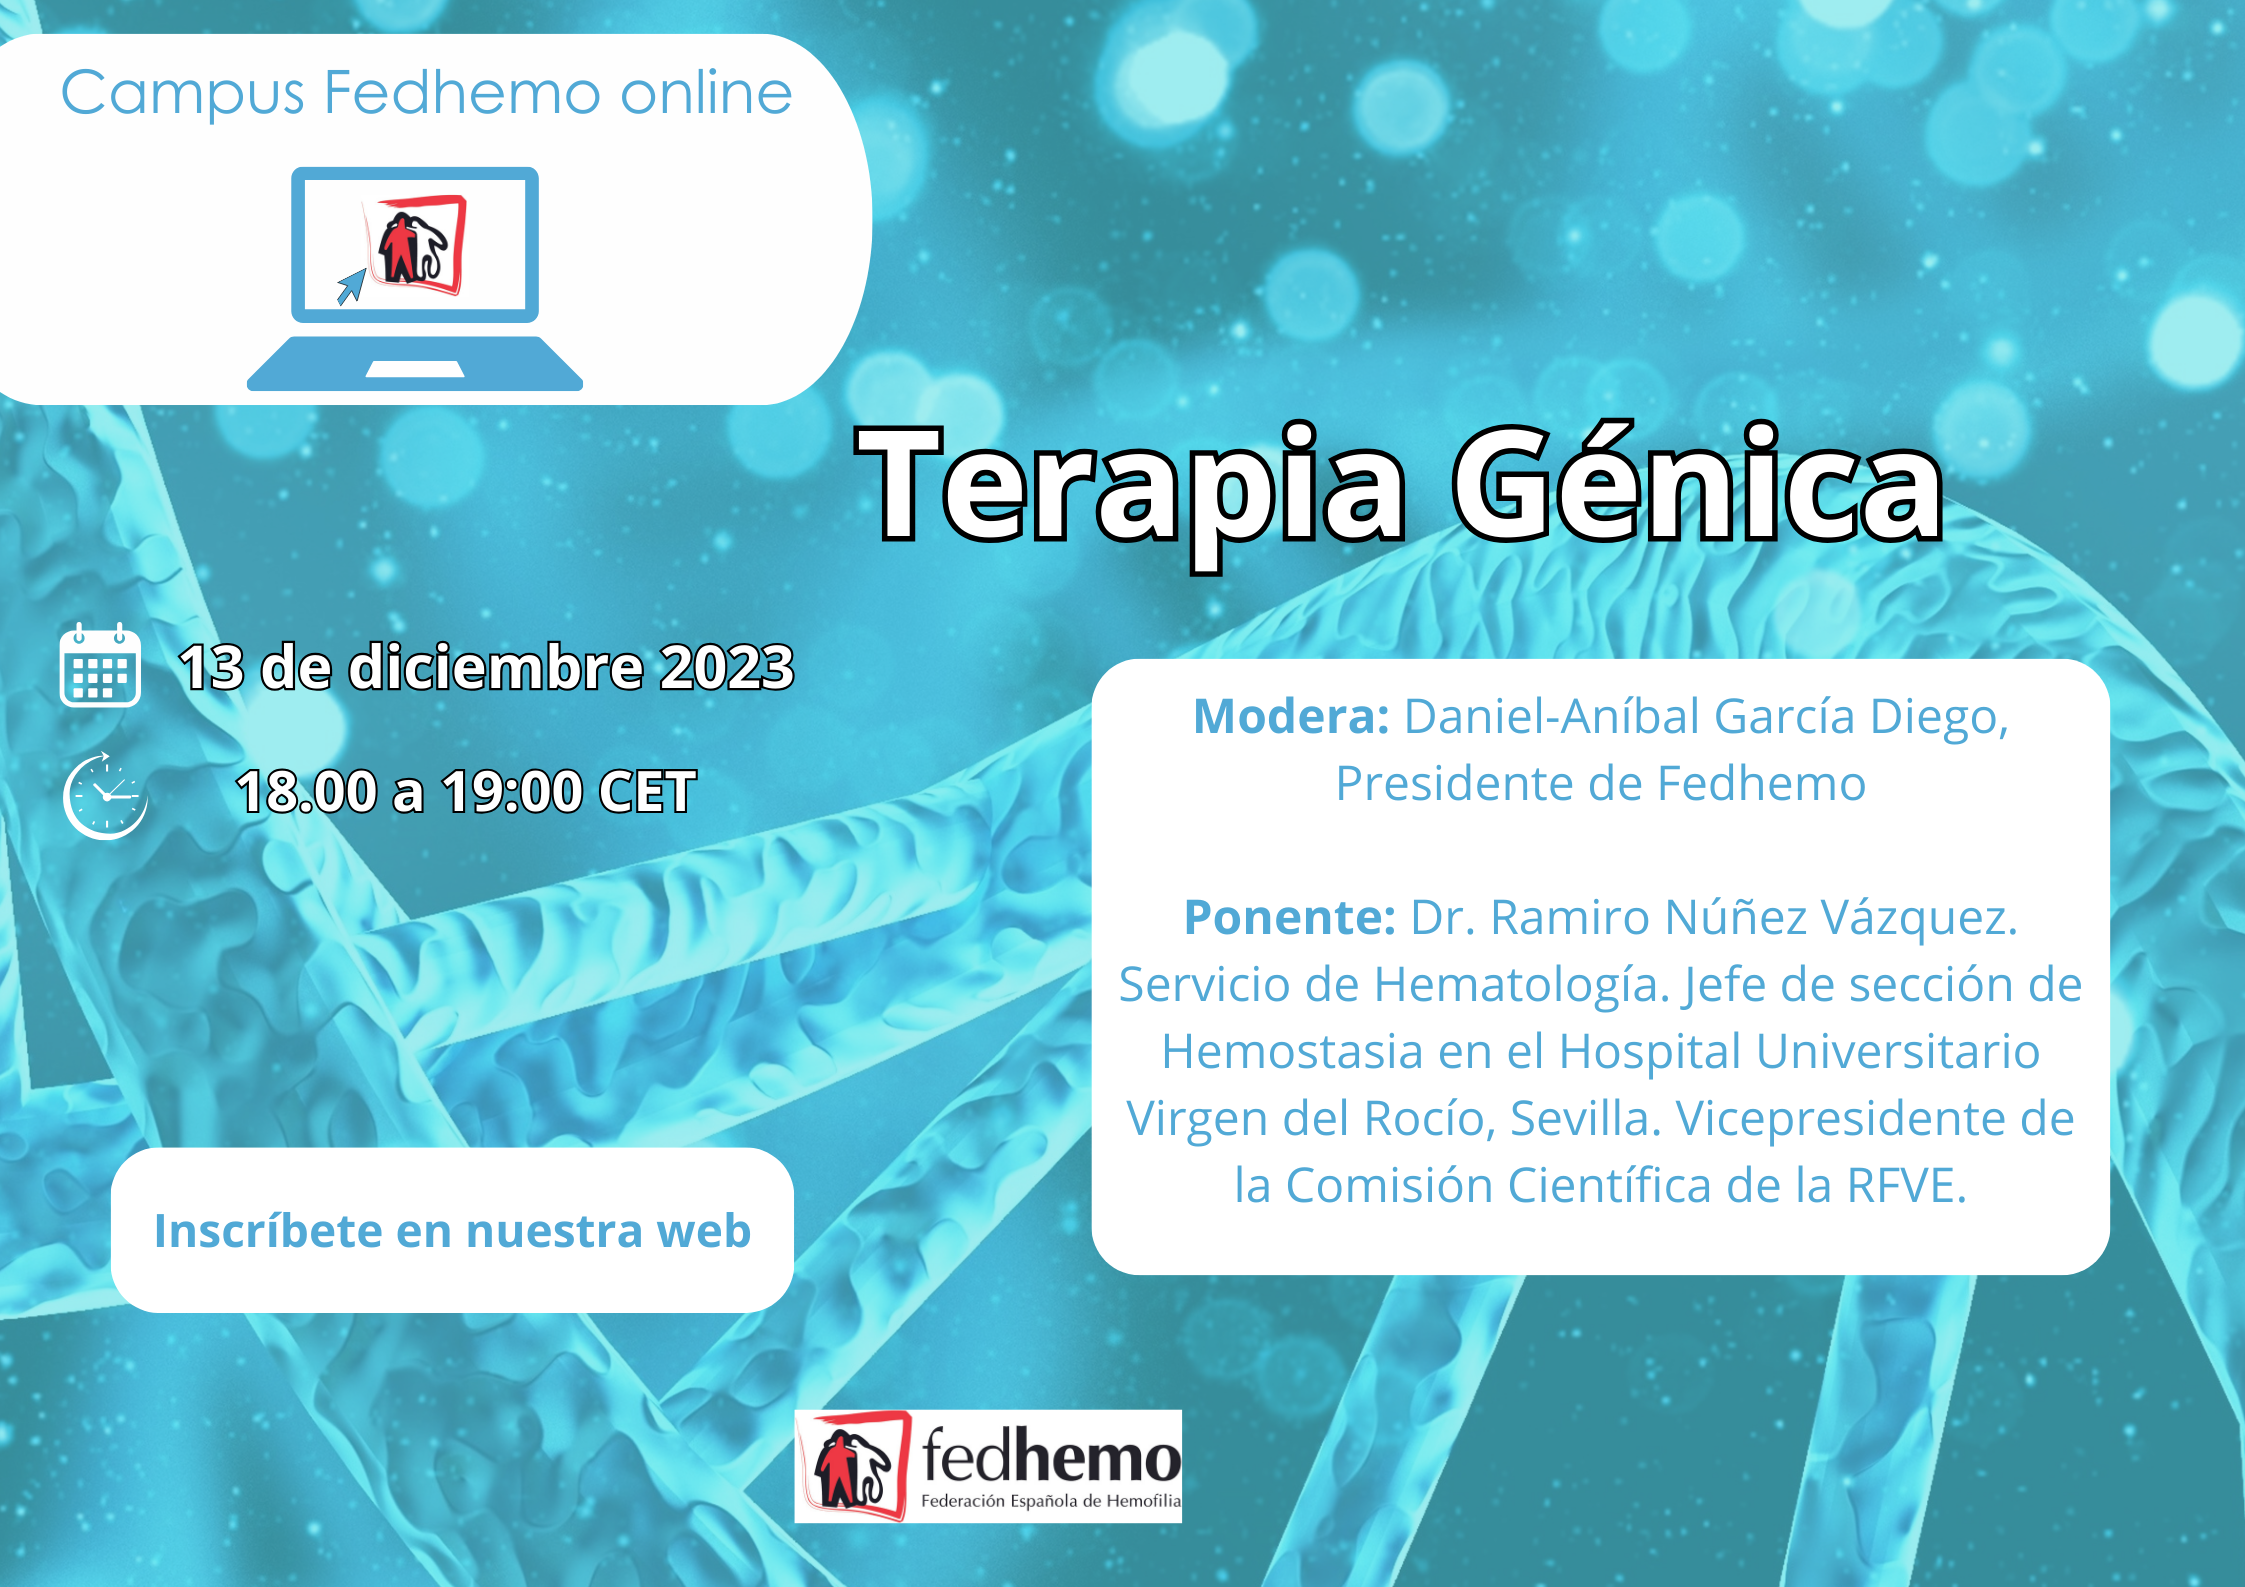 Inscripciones abiertas al webinar Campus Fedhemo “Terapia Génica en Hemofilia”